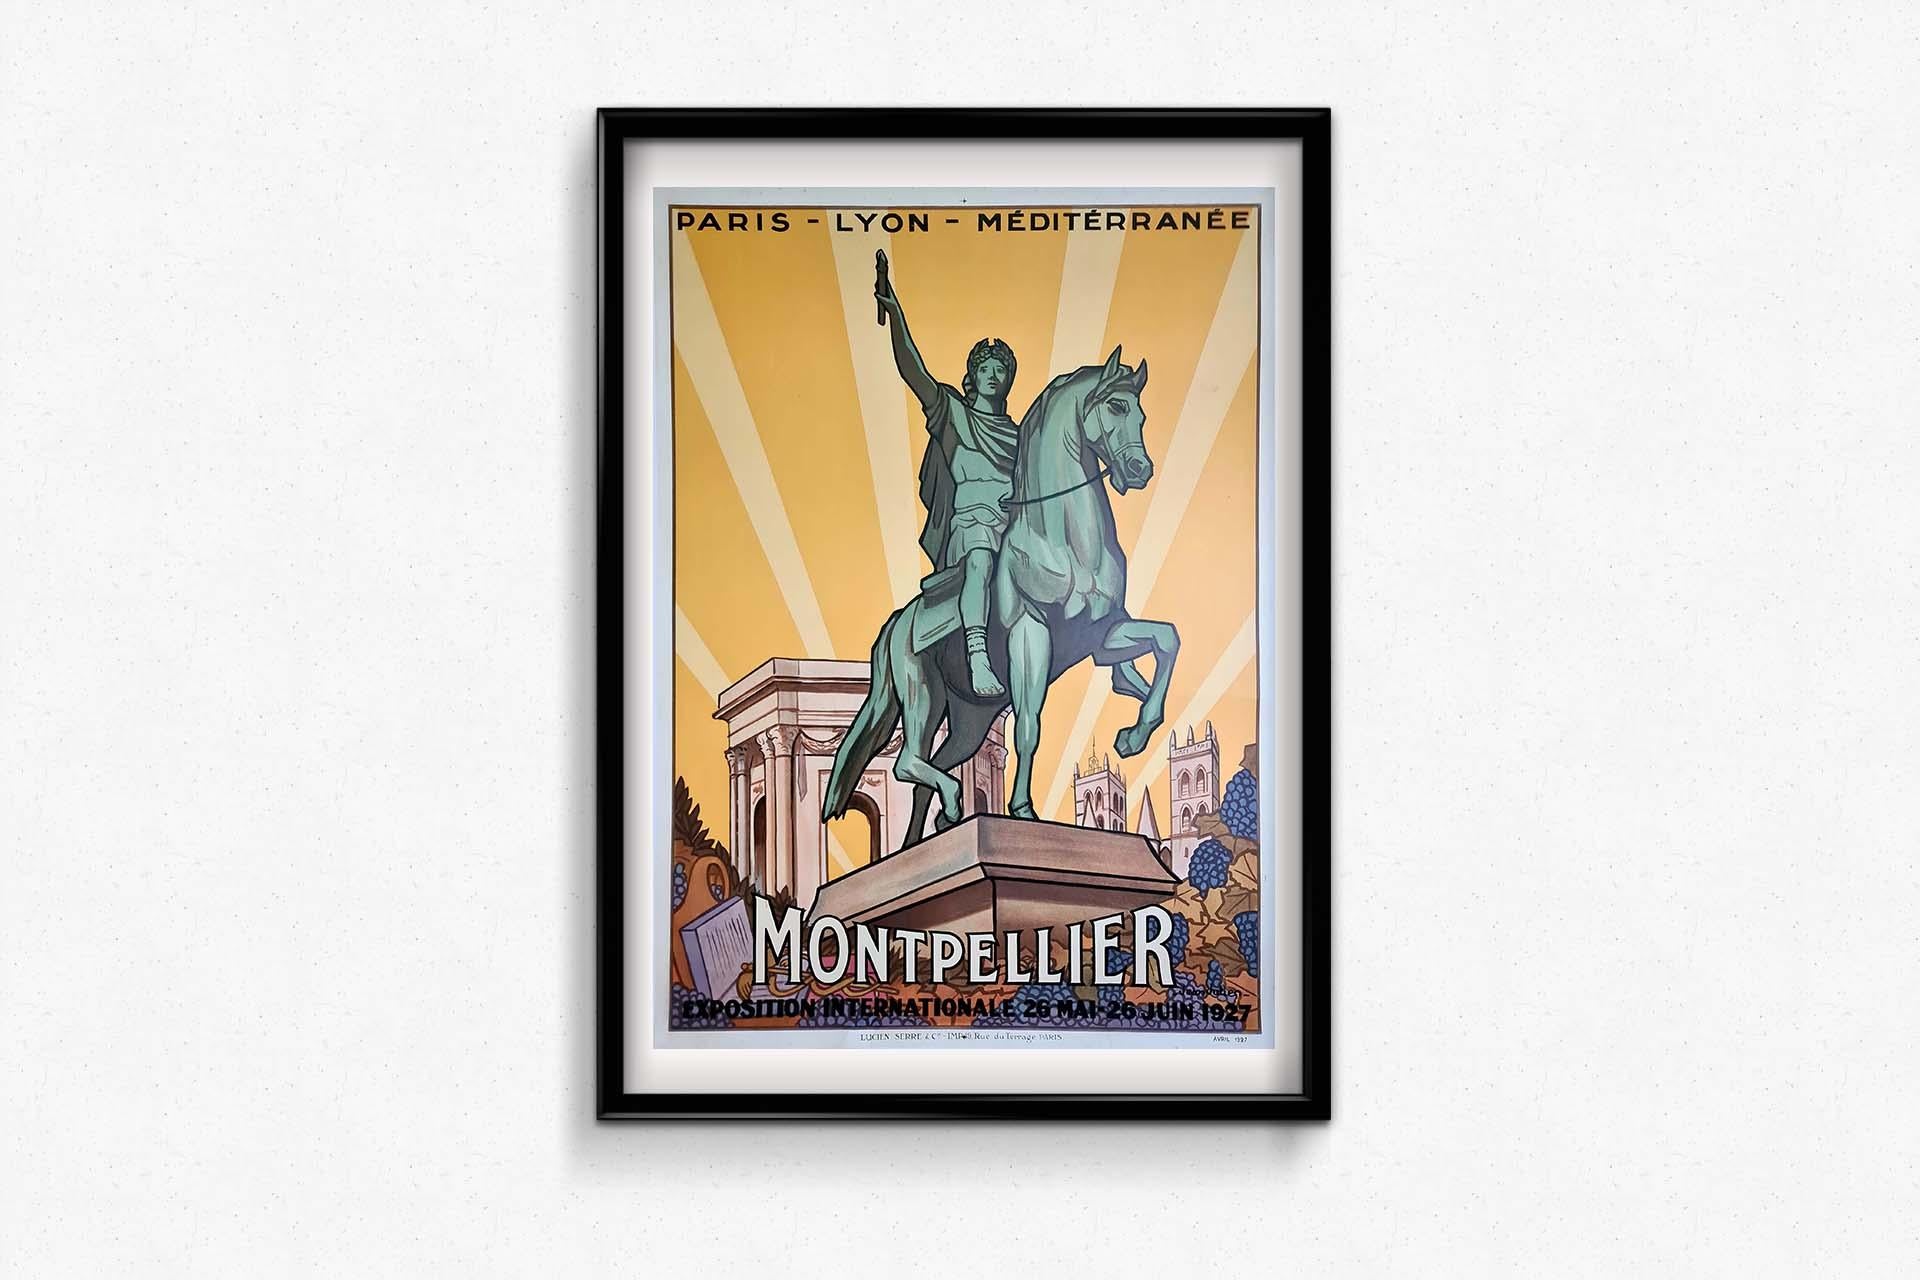 Das Originalplakat von Jean Julien aus dem Jahr 1927 für die Exposition Internationale Montpellier 1927, die von Paris Lyon Méditerranée (PLM) gesponsert wurde, ist eine fesselnde Mischung aus Kunst und Werbebotschaft. Das Plakat, das zur Bewerbung